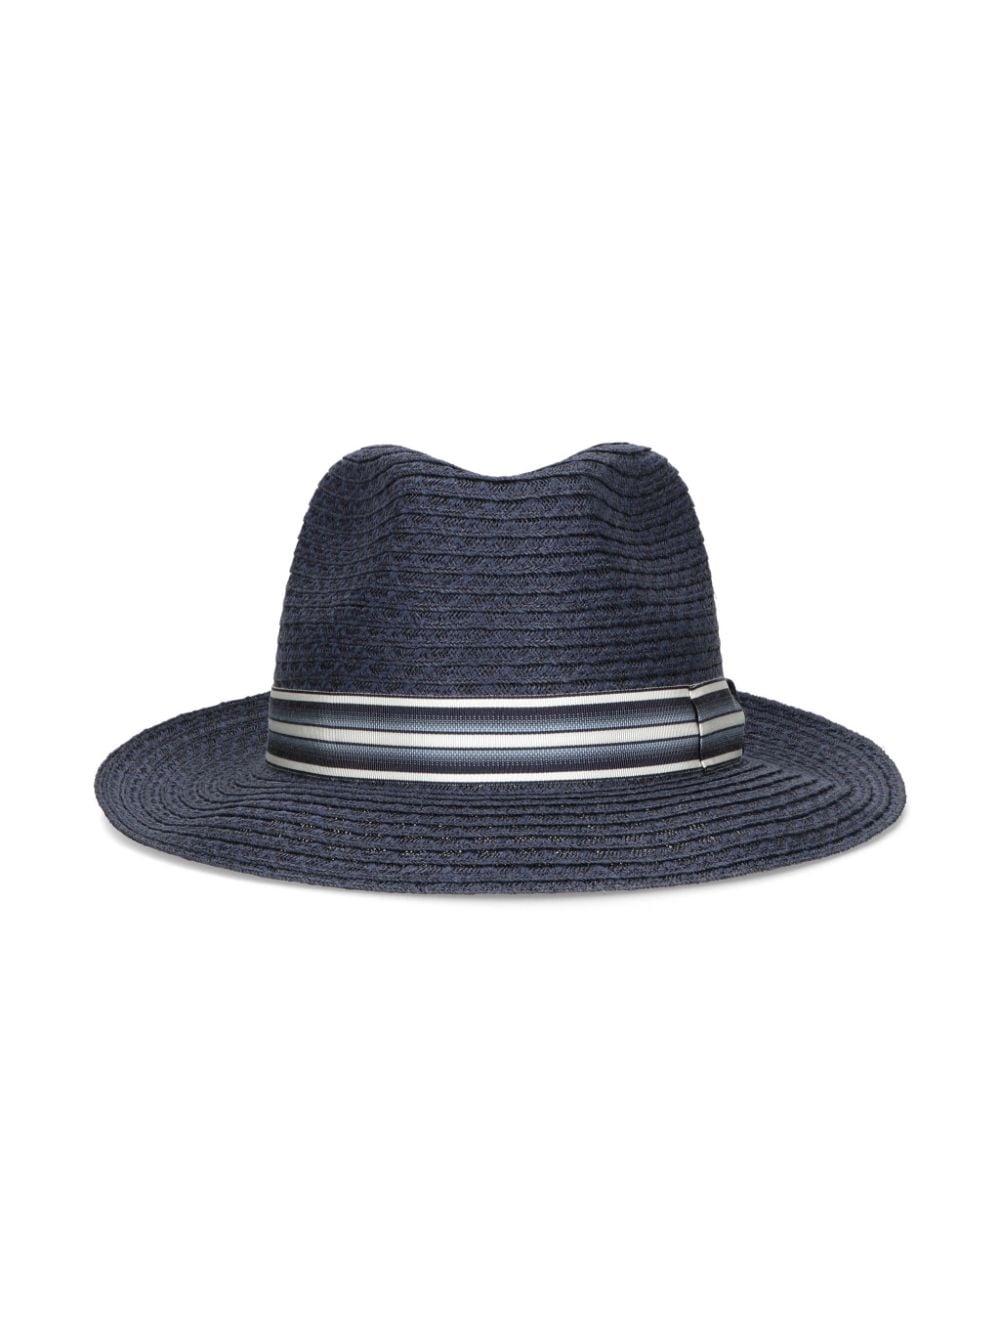 Borsalino Edward braided sun hat - Blauw